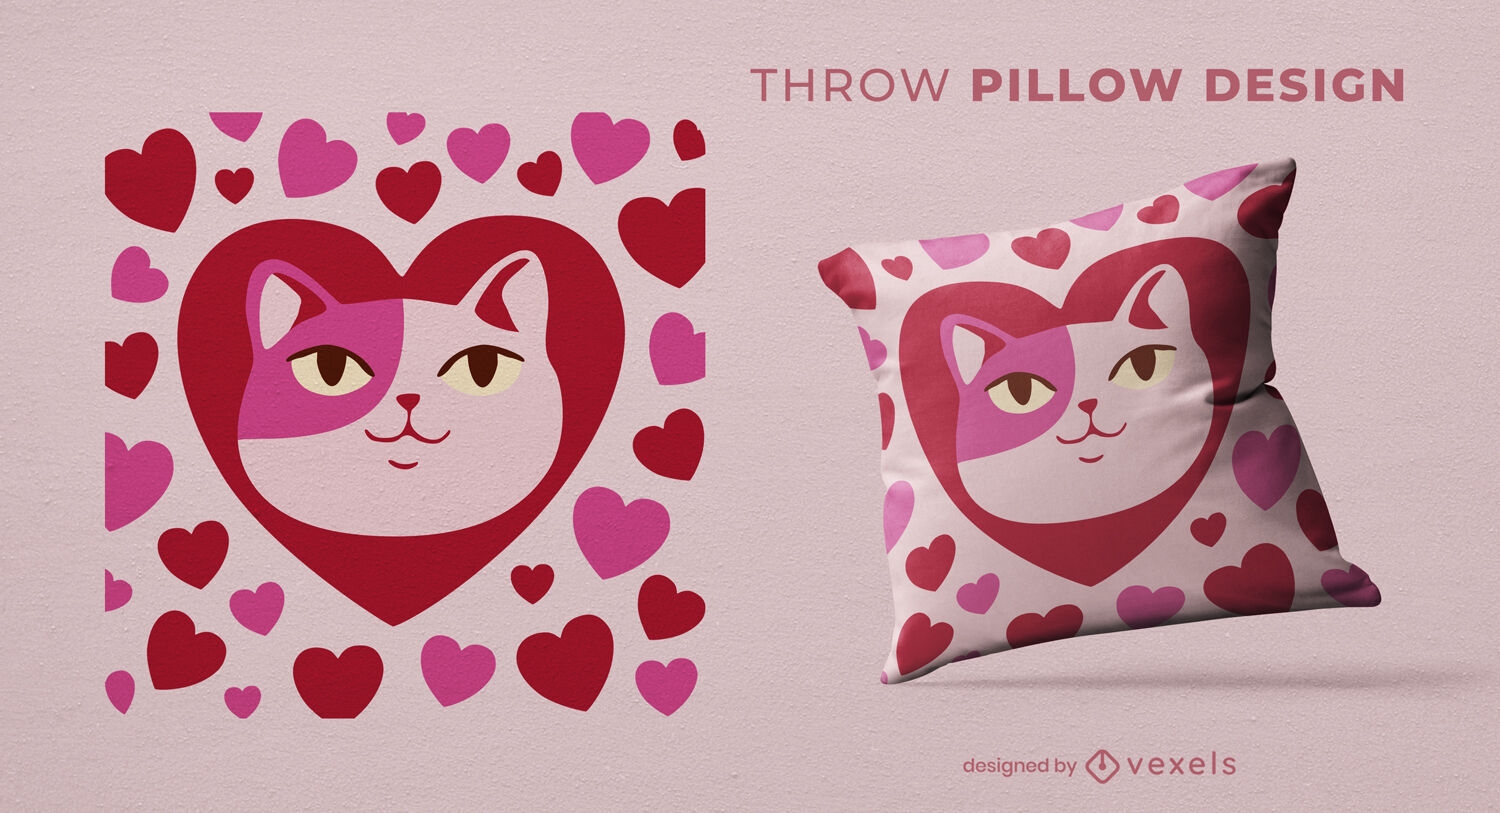 Diseño de almohada de tiro de amor y corazones de gato.